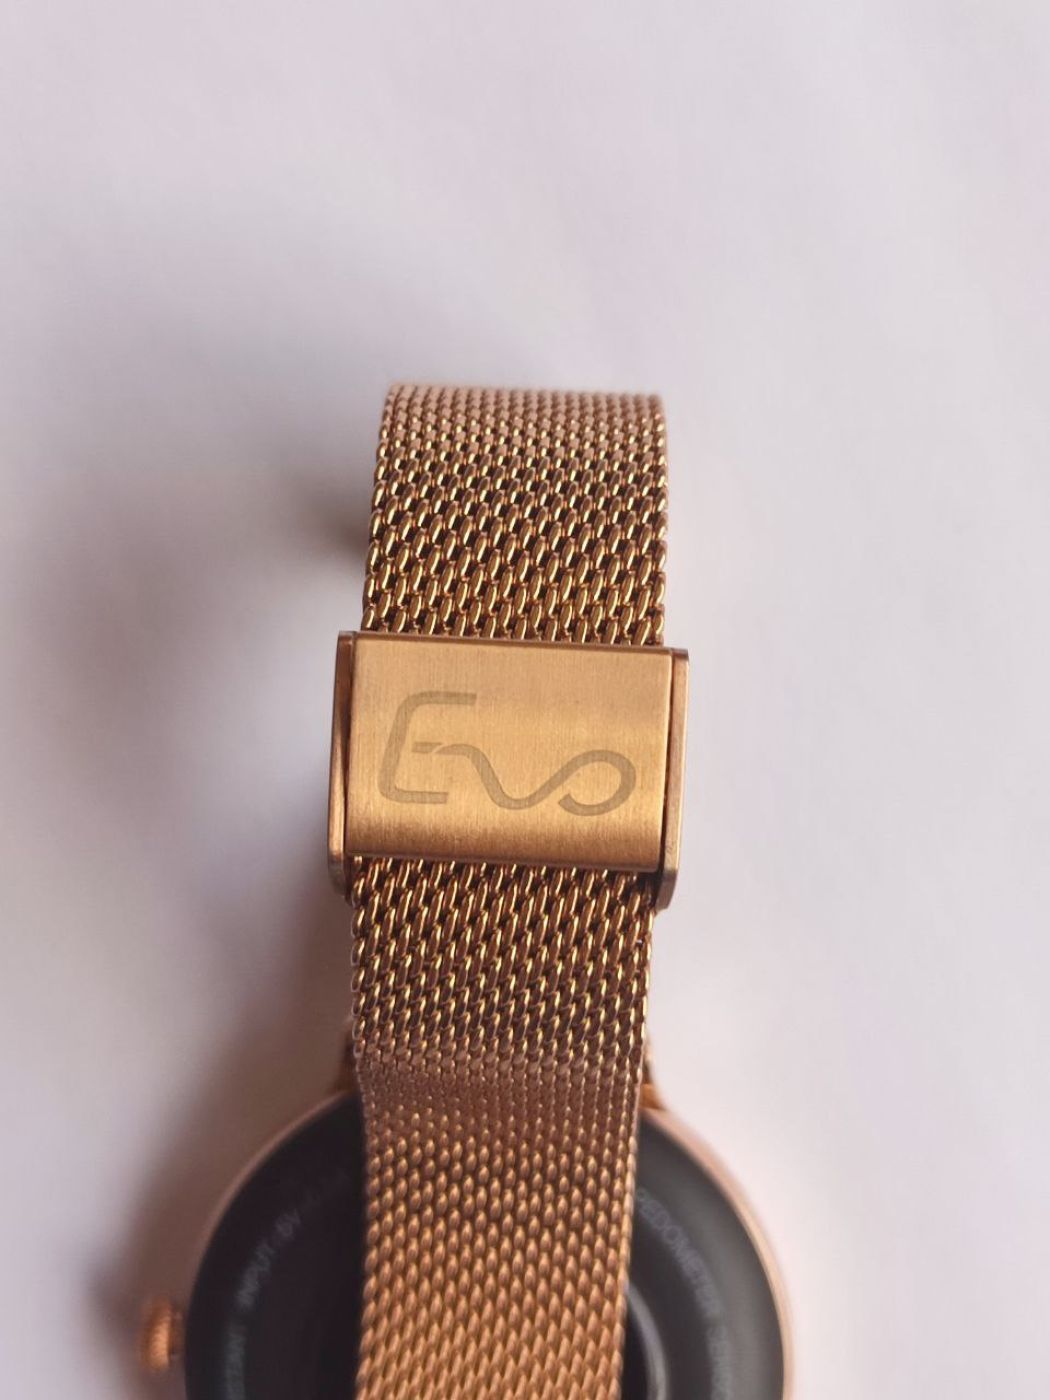 Đồng hồ thông minh Evo Ny02 dành cho phái nữ